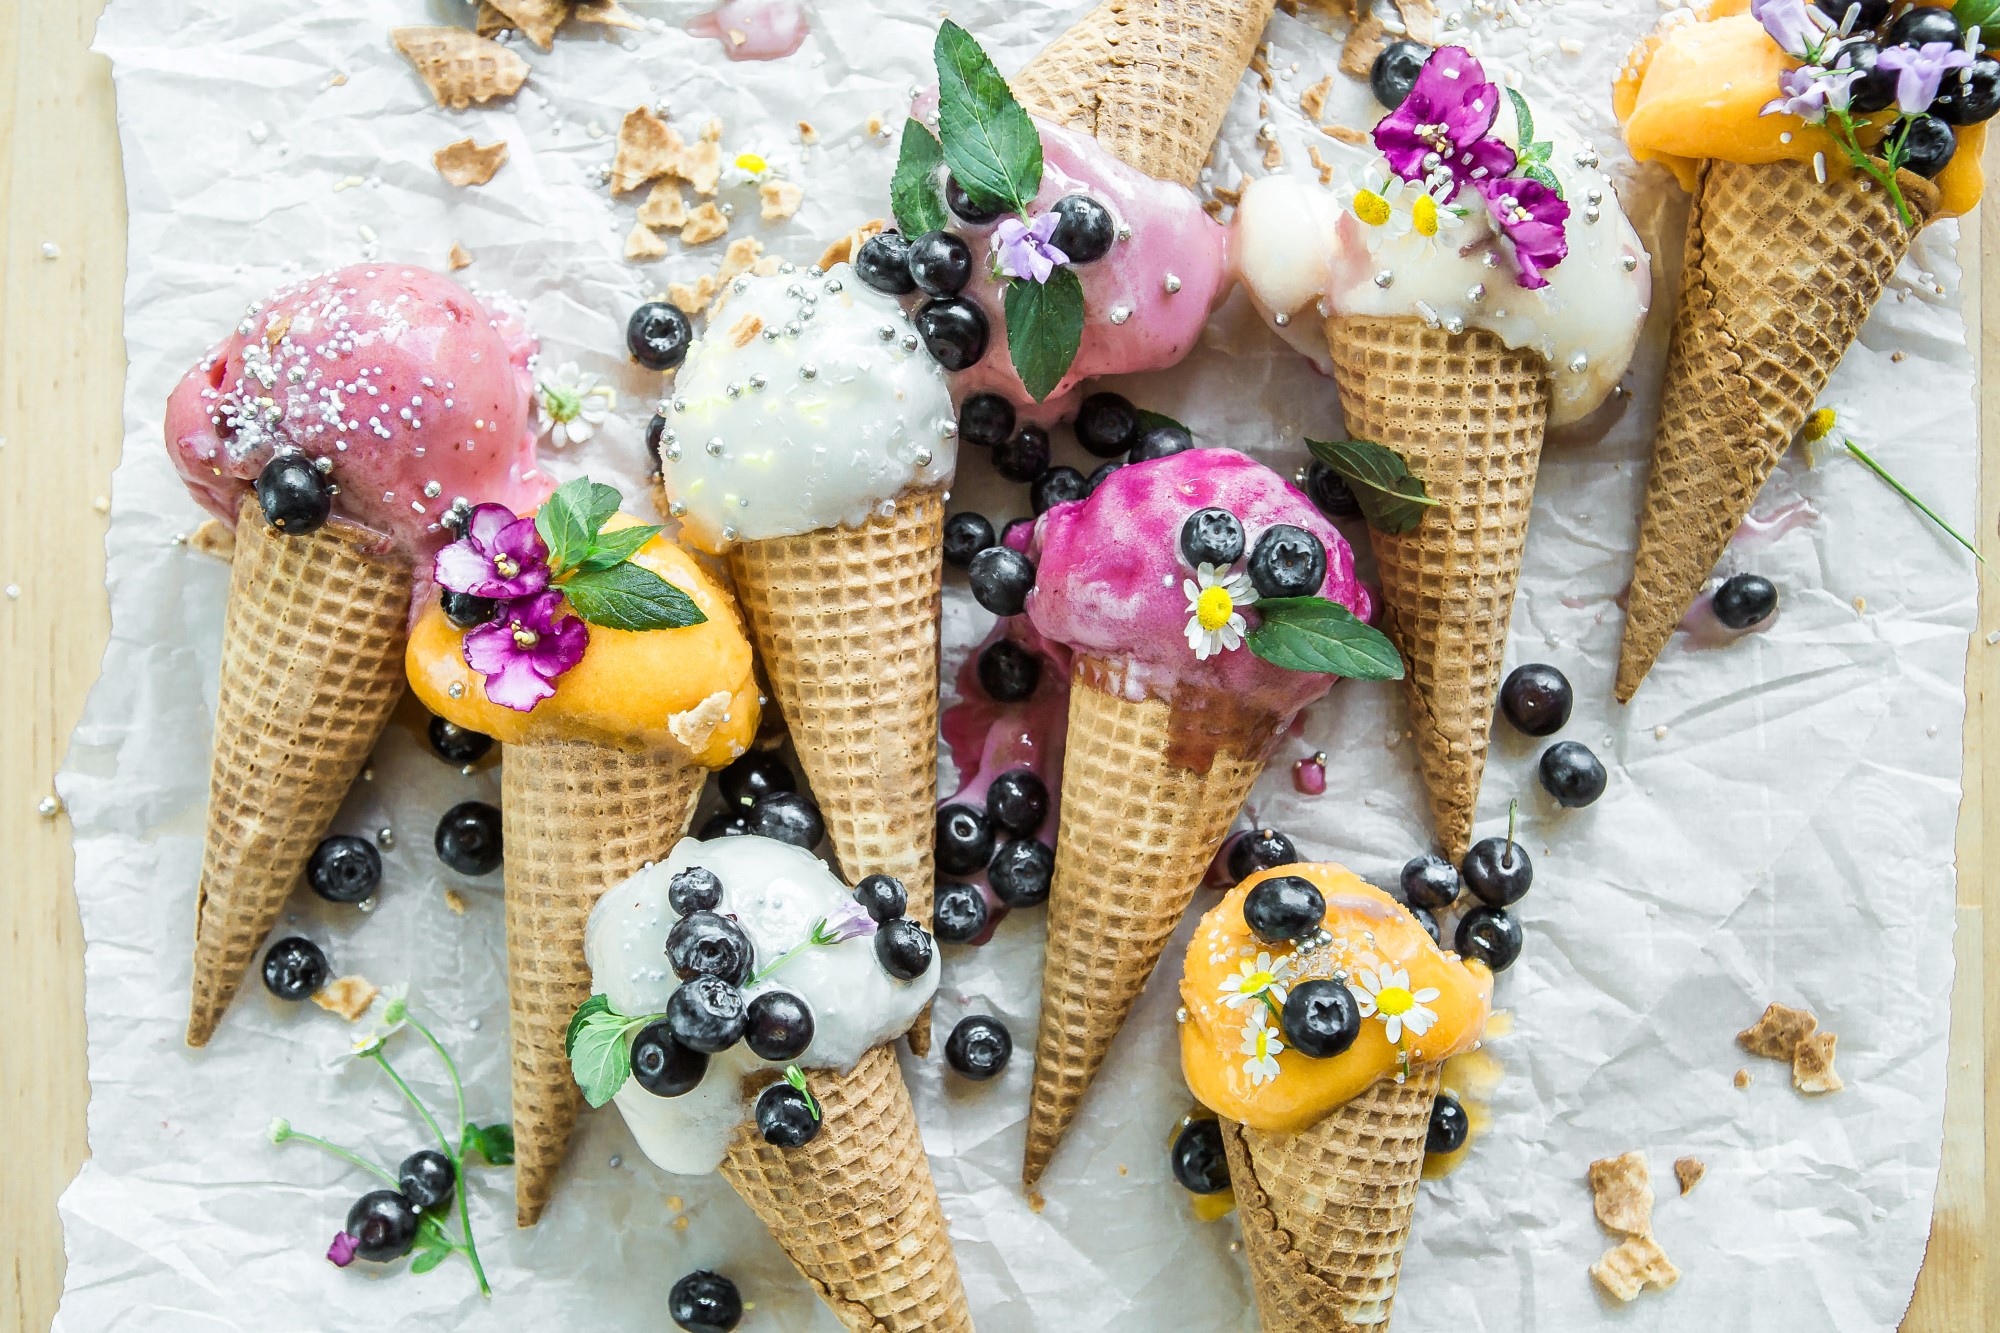 Iskrem i mange ulike farger med blomster og bær